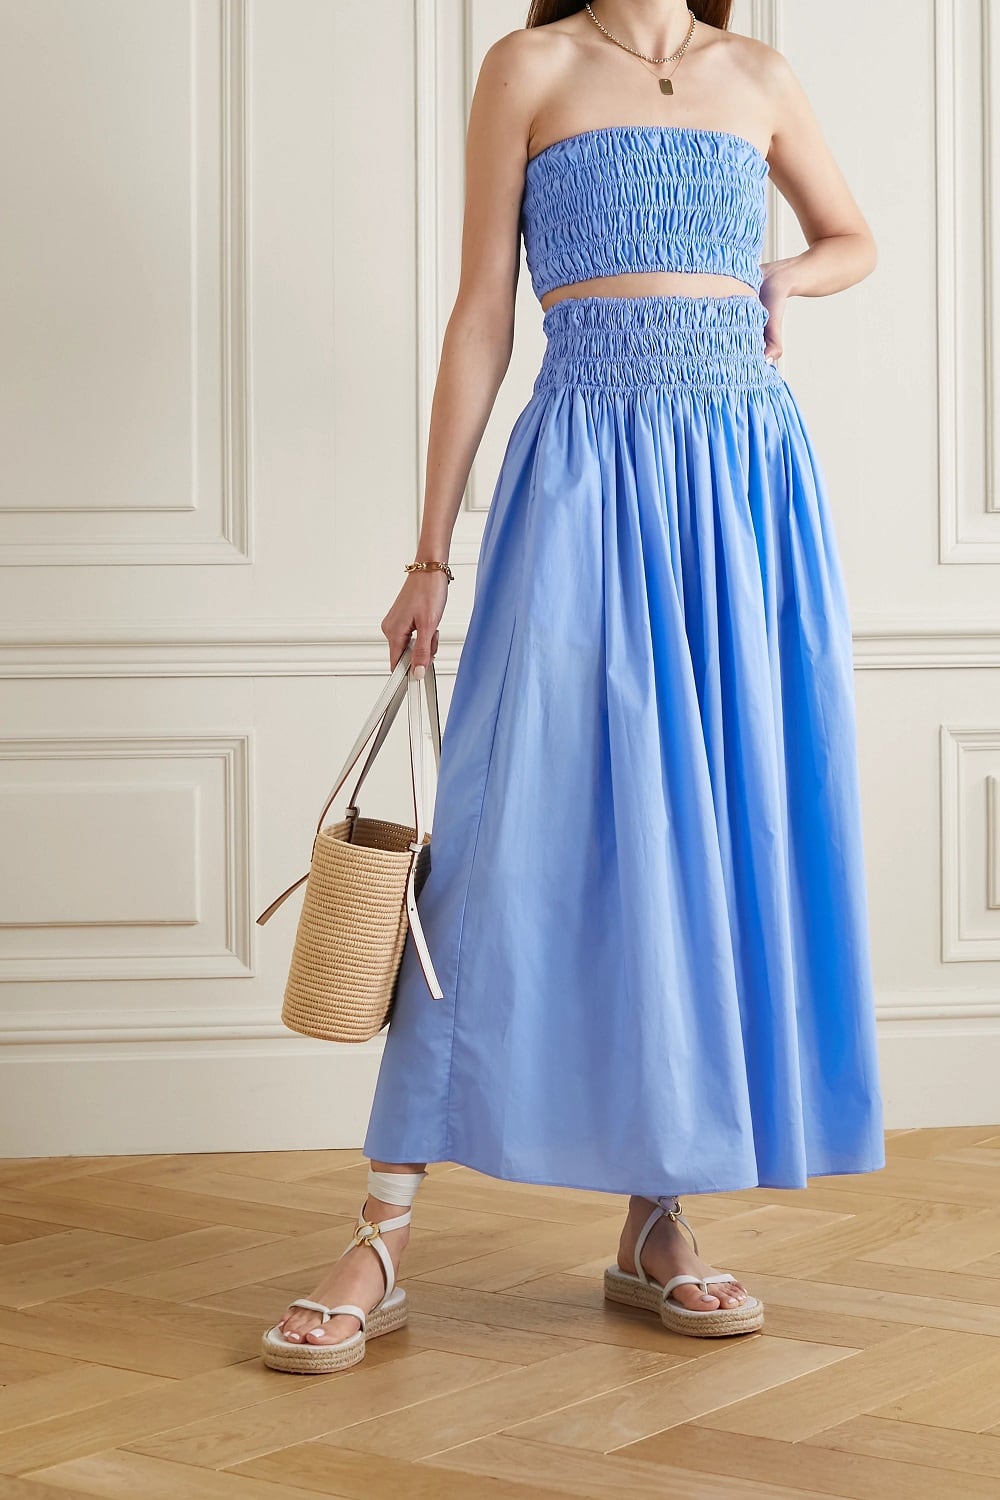 Matteau plava boja odjevni komadi proljeće ljeto 2021.  